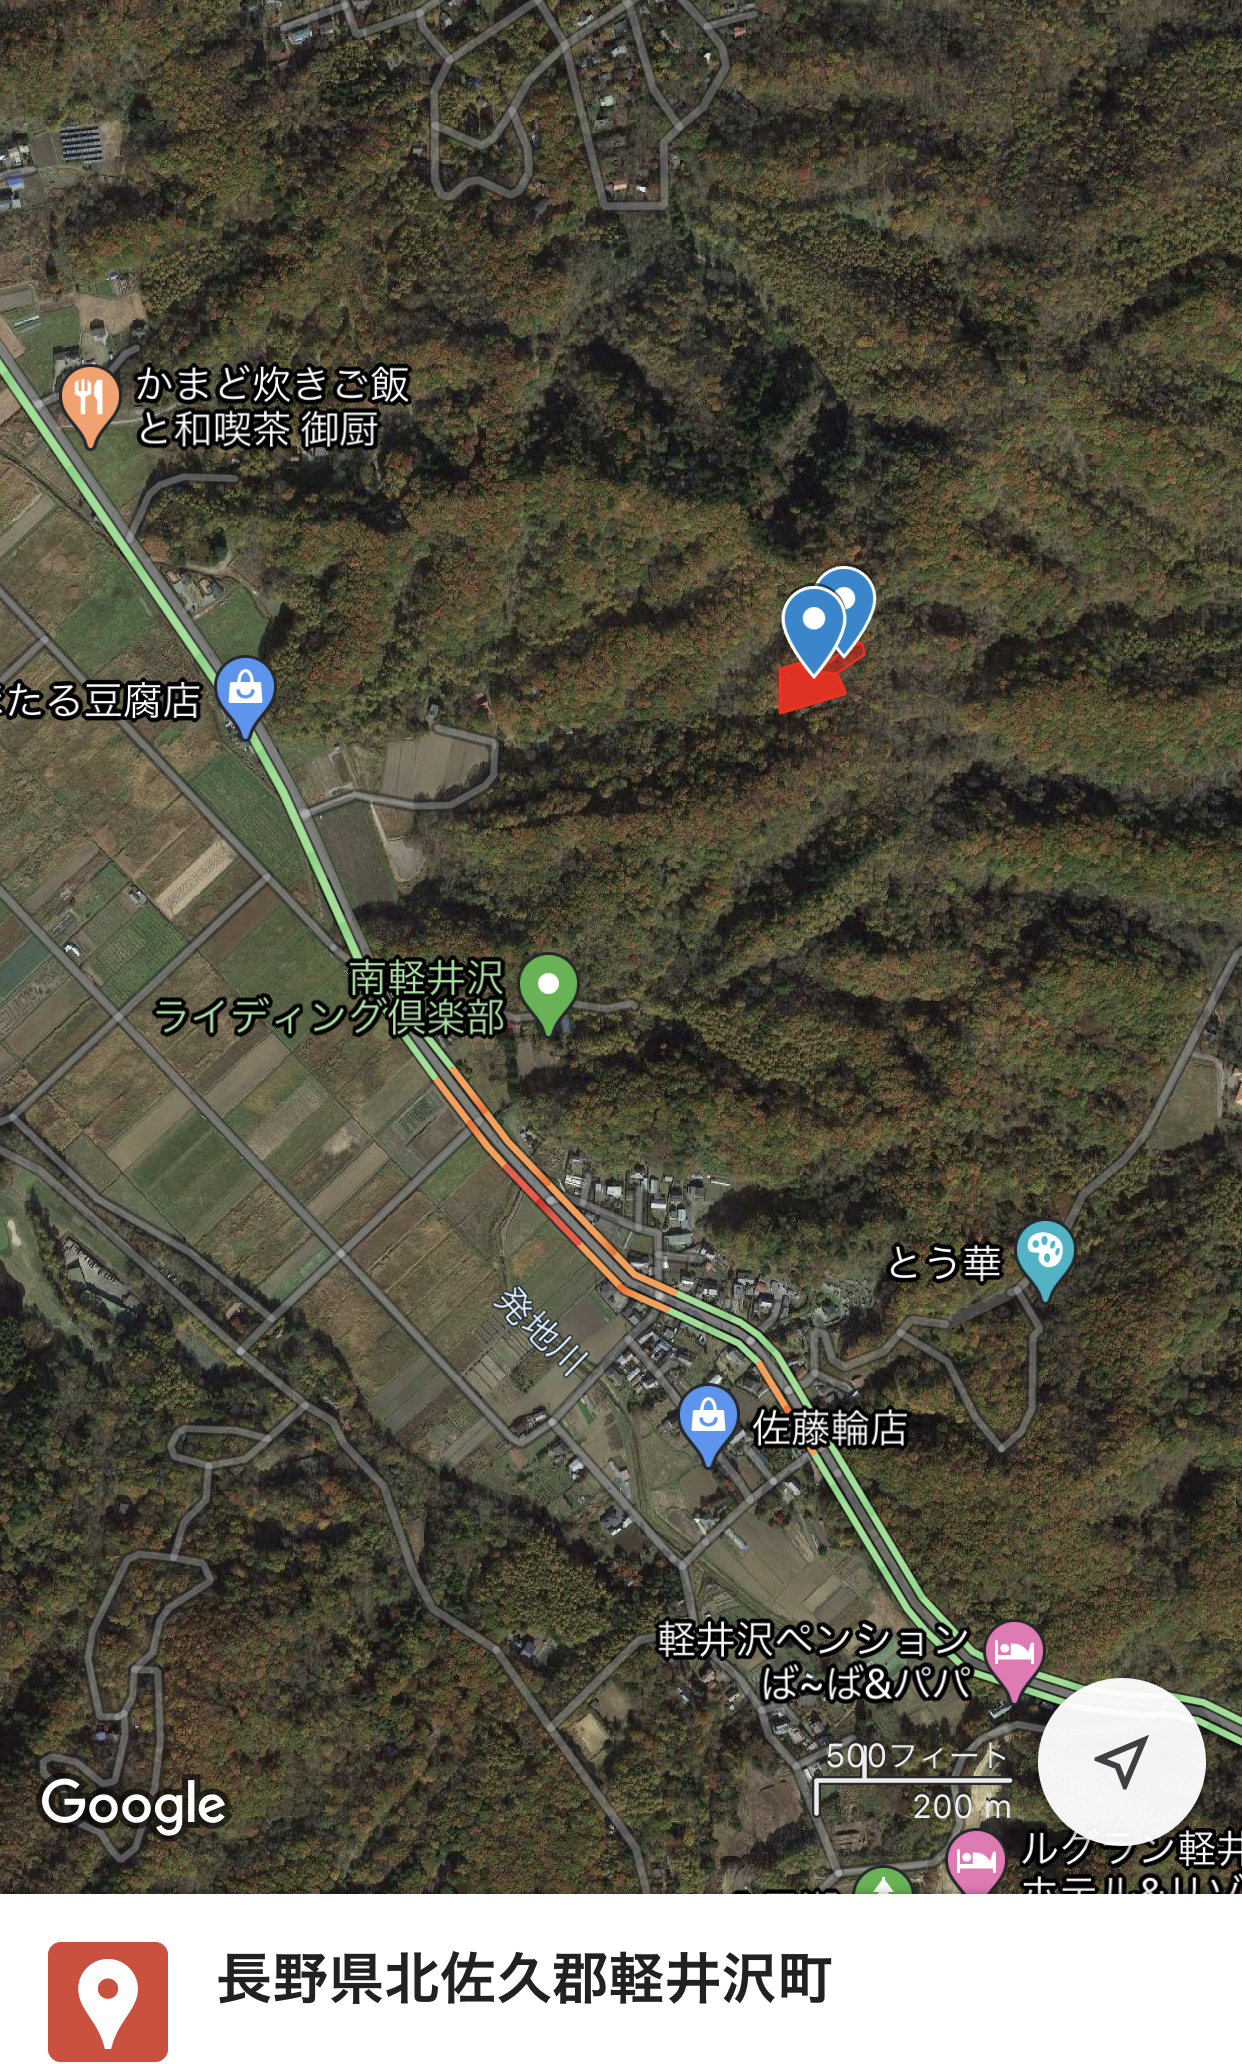   長野県北佐久郡軽井沢町大字発地字中山にある山林です。350万円